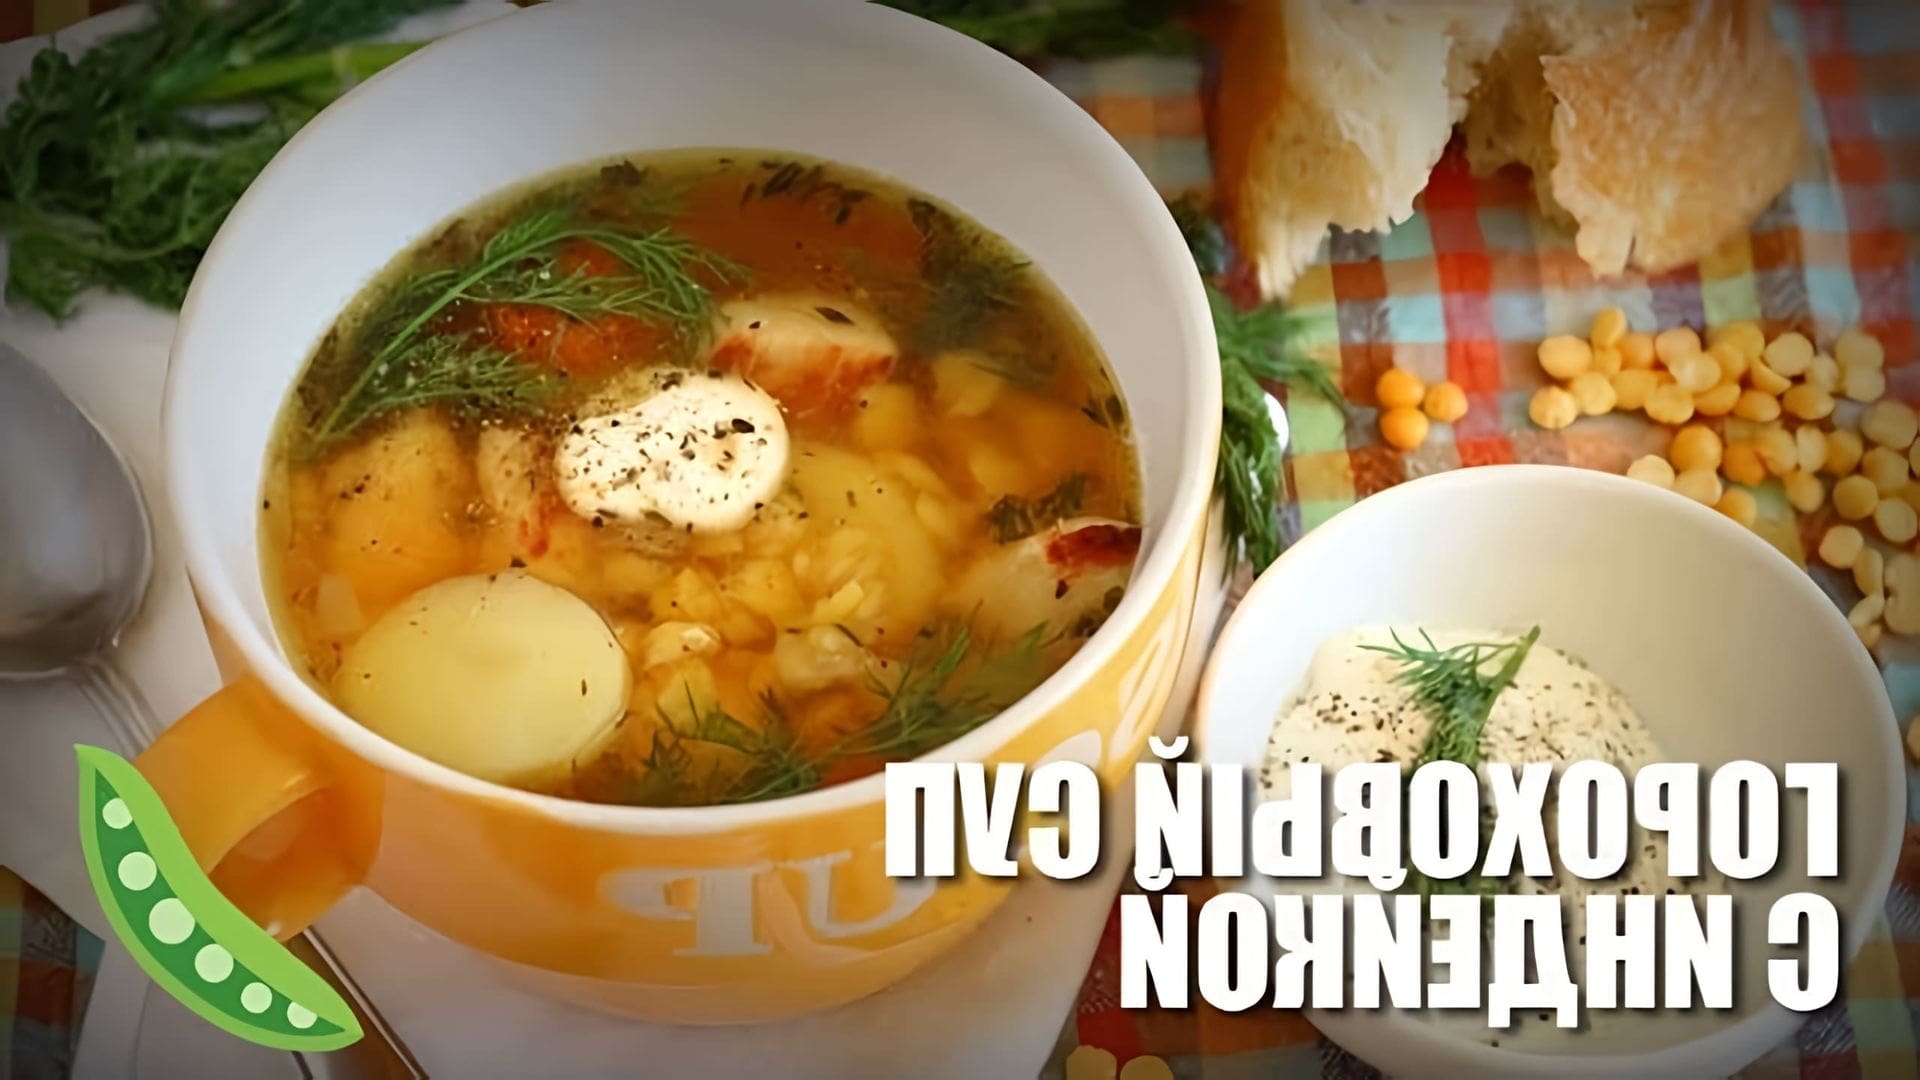 В этом видео демонстрируется рецепт приготовления горохового супа с индейкой